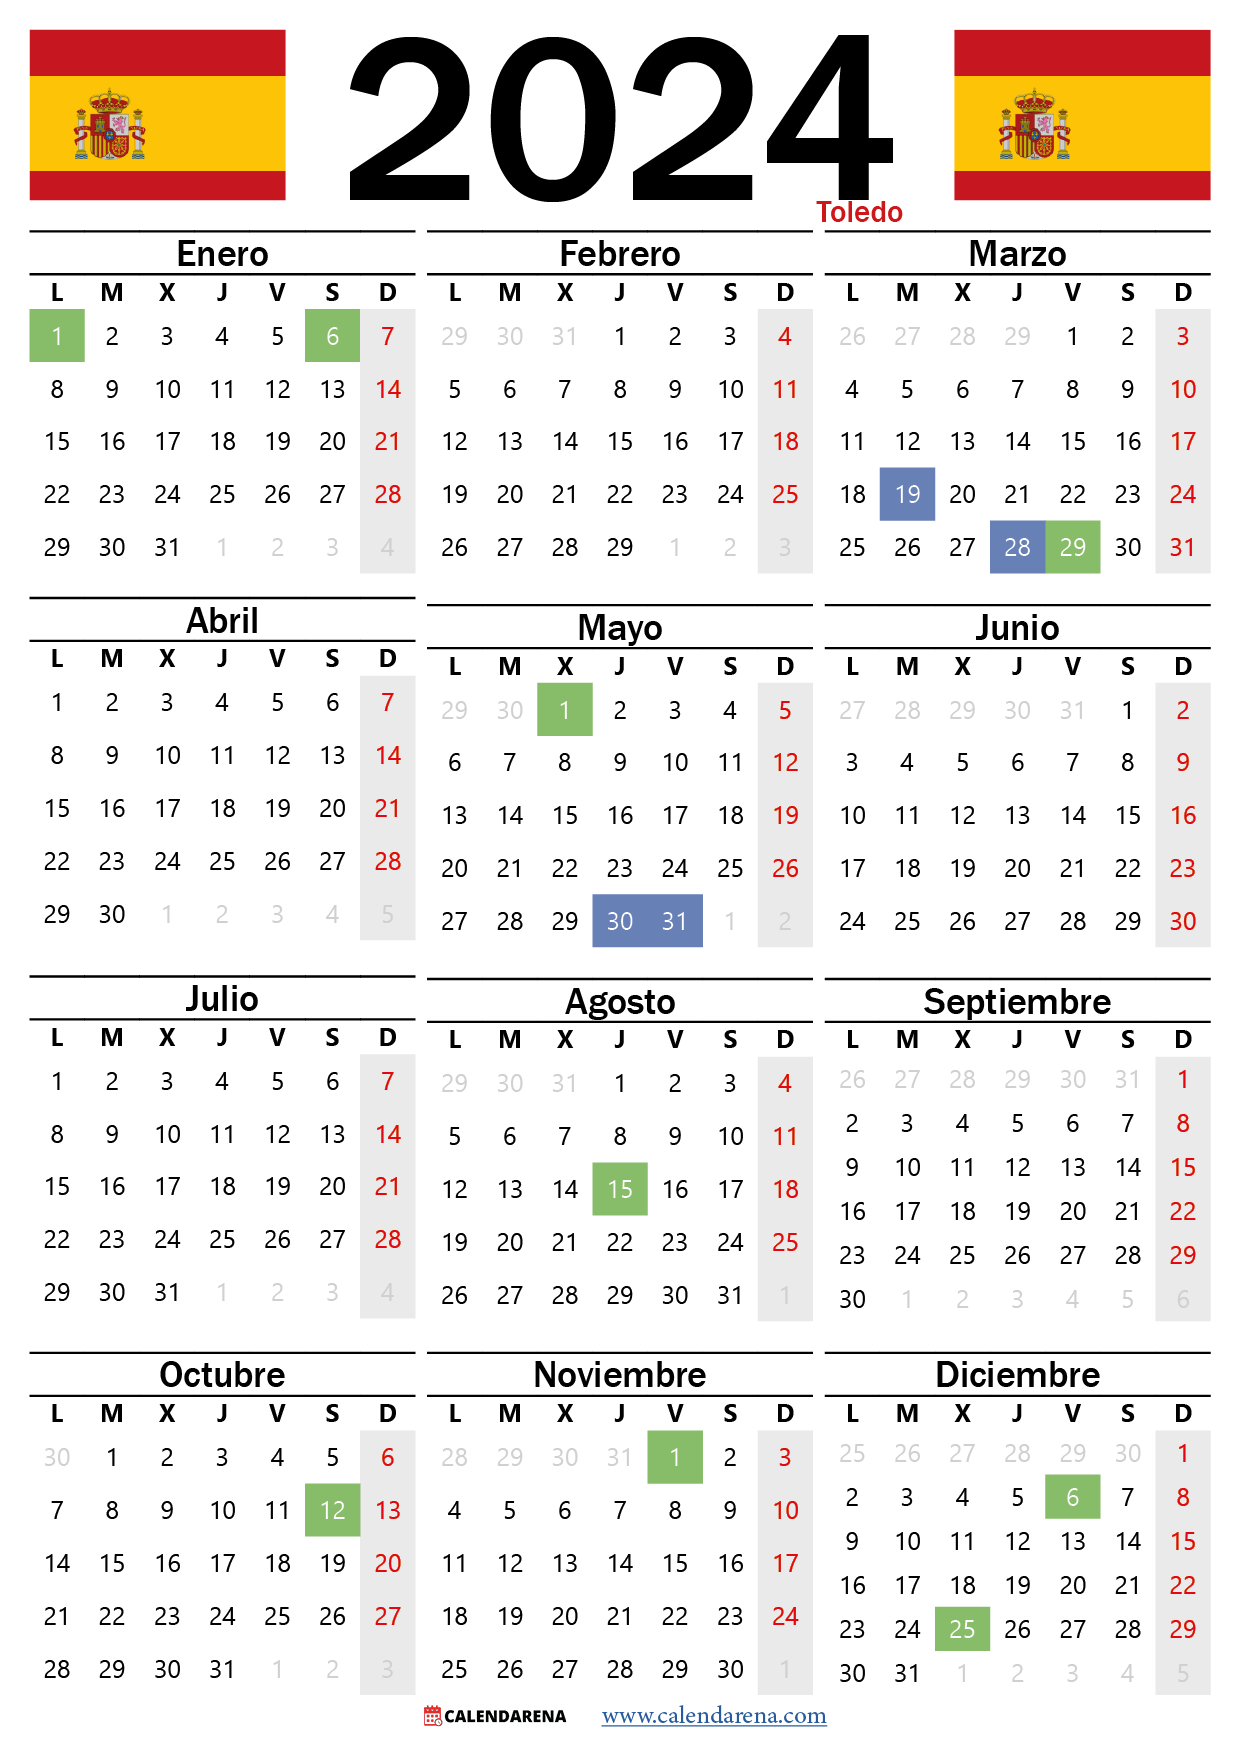 Calendario Laboral Toledo 2024 